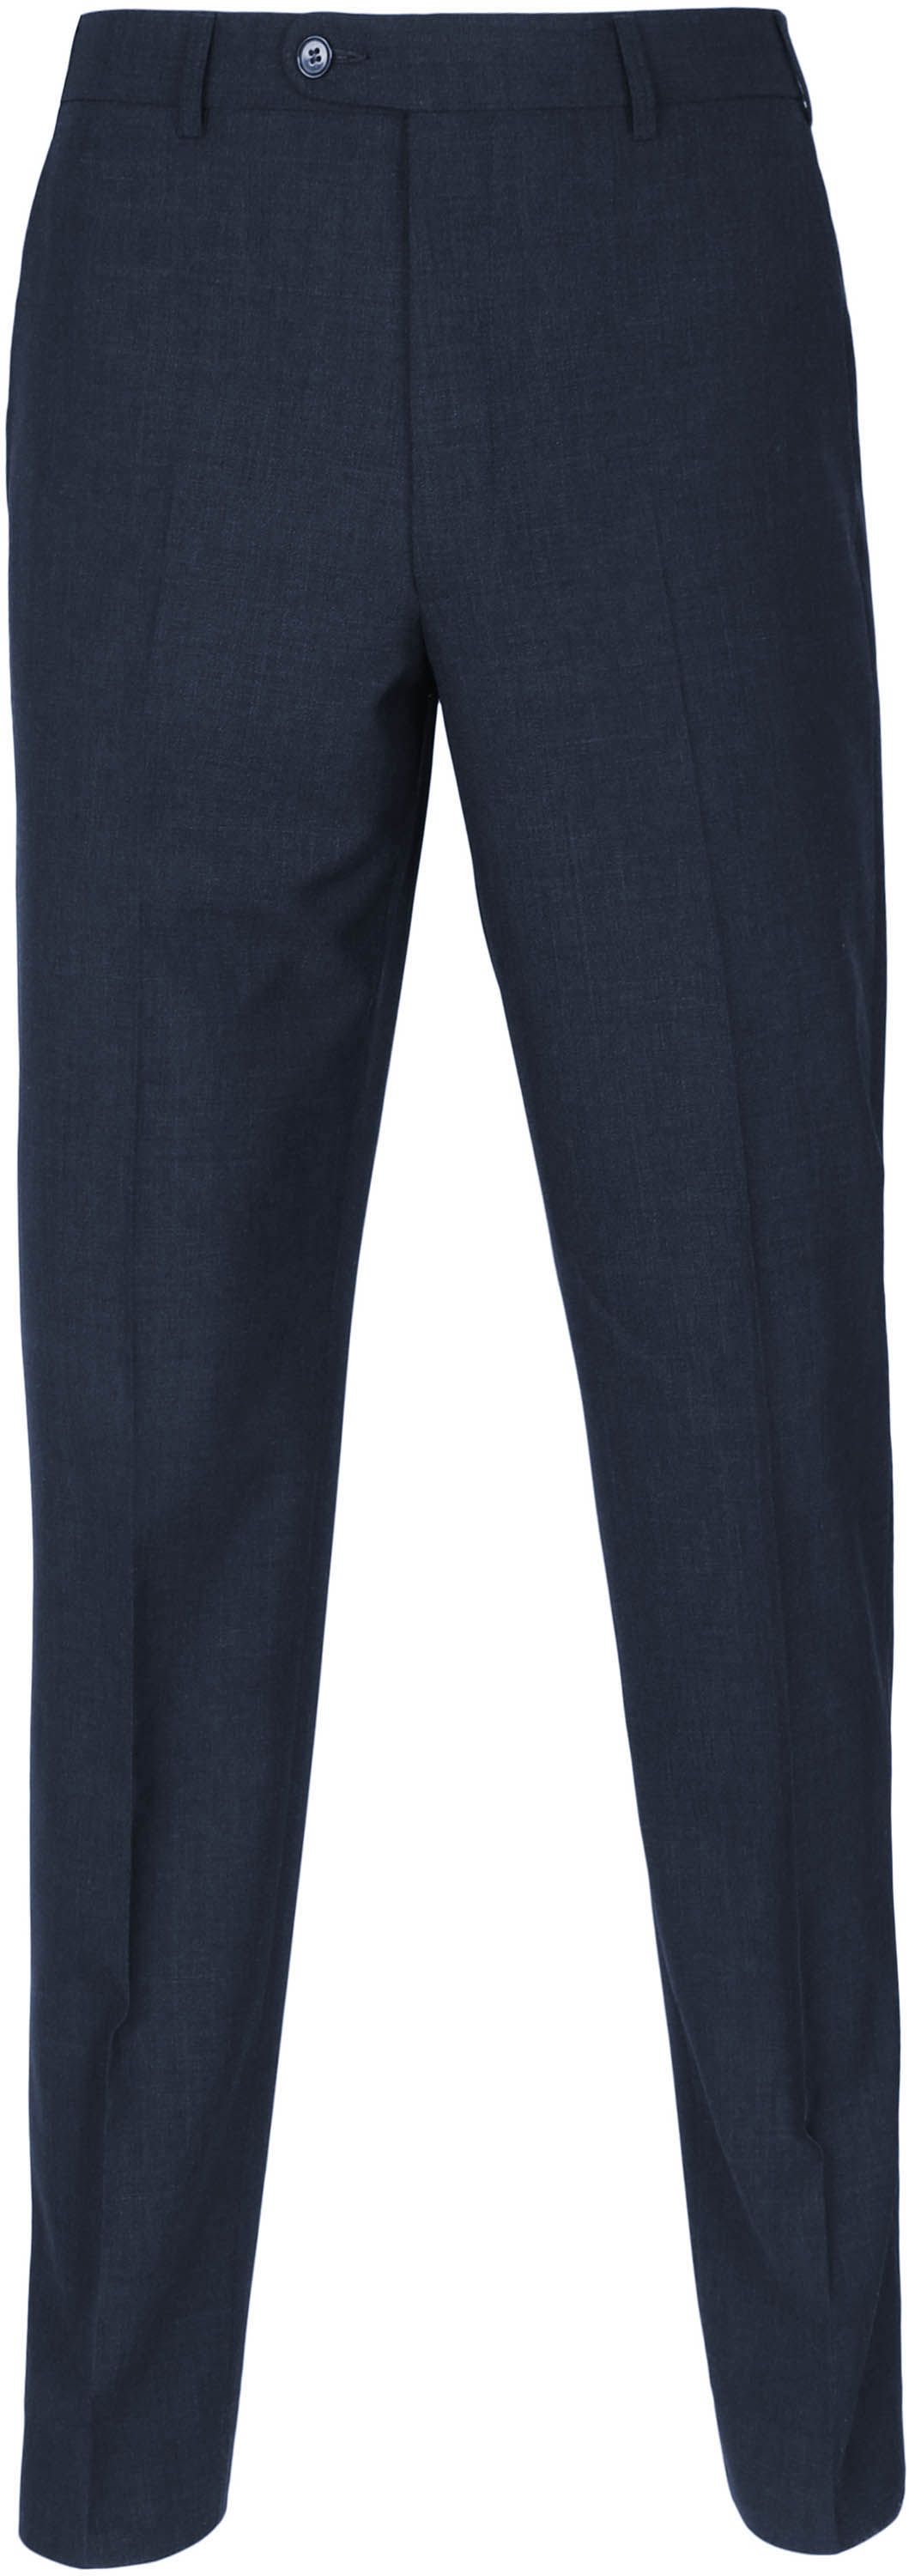 Suitable Pantalon Picador Navy Blue Dark Blue size W 30/31